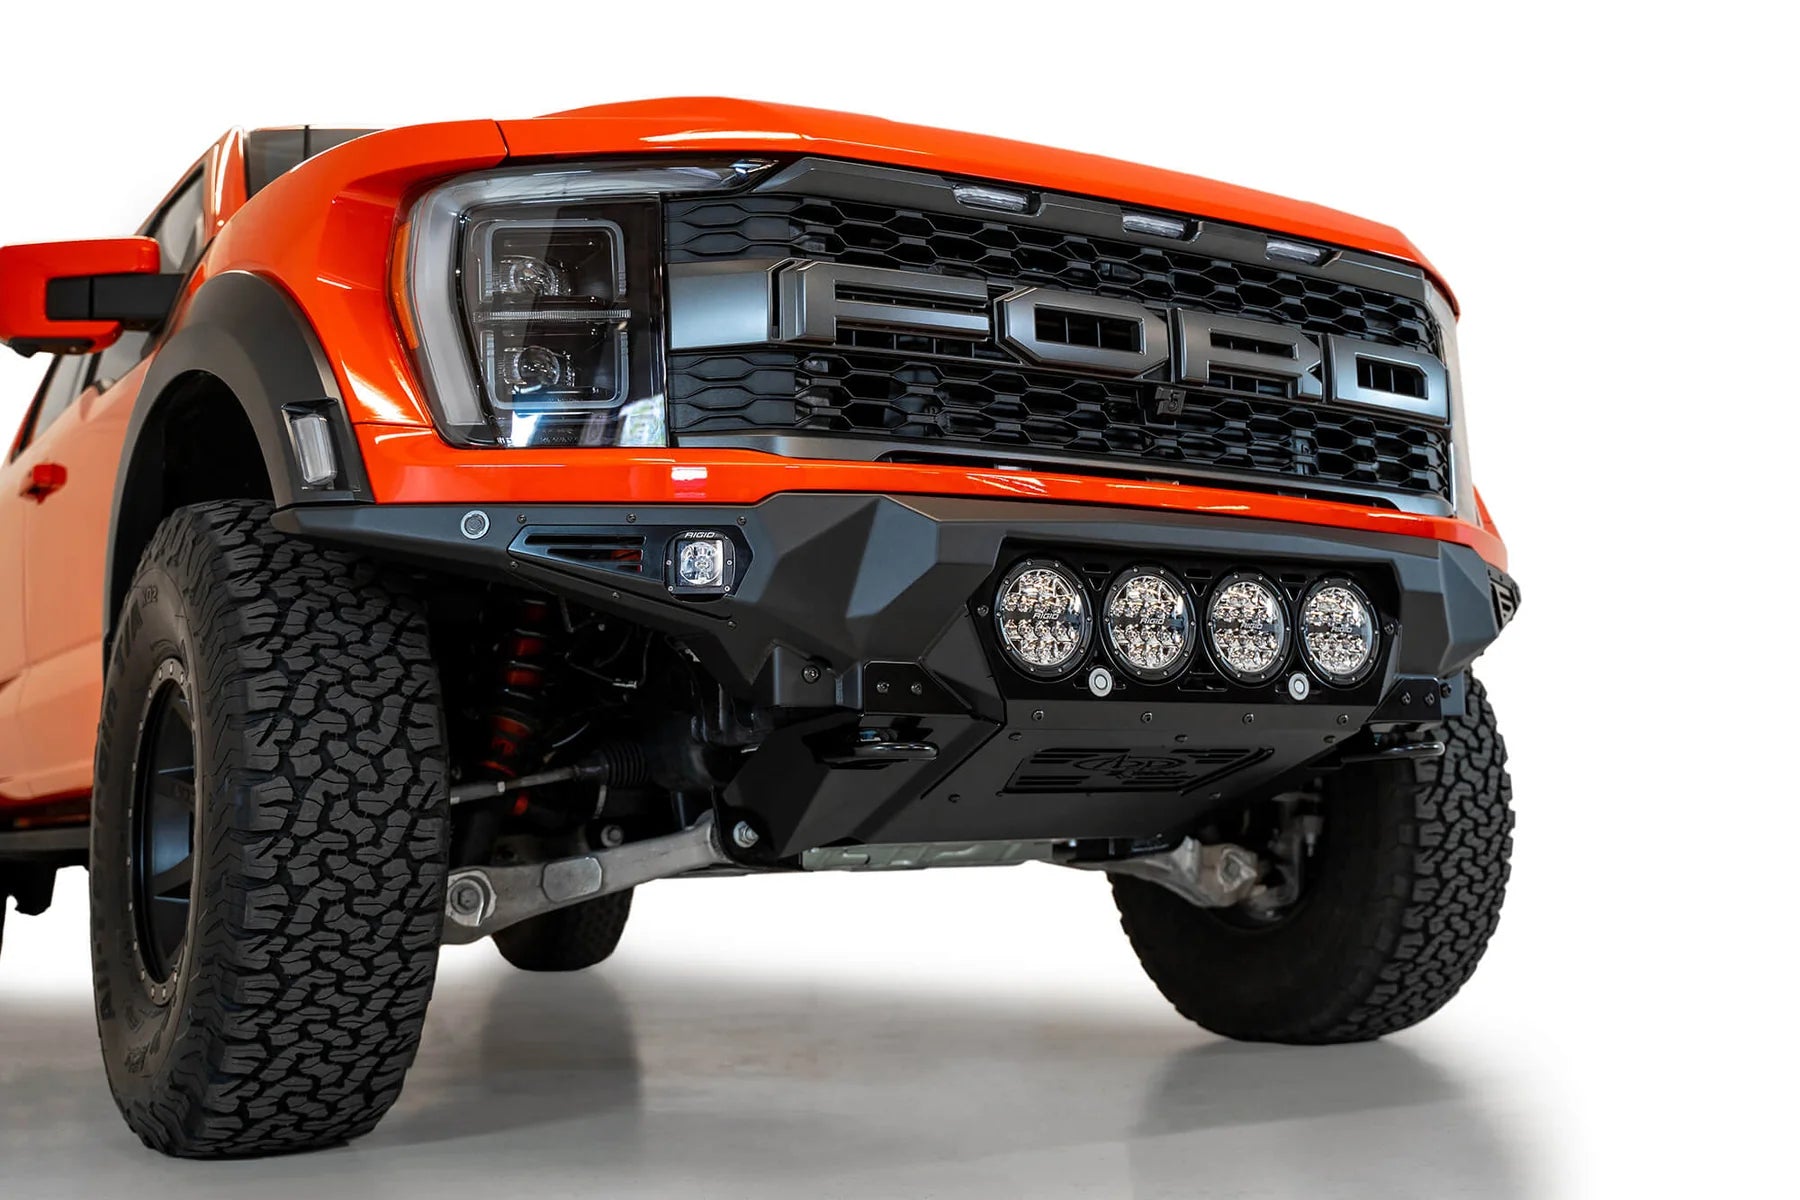 Add Offroad Ford Raptor/Raptor R Bomber Front Bumper for Rigid Lights